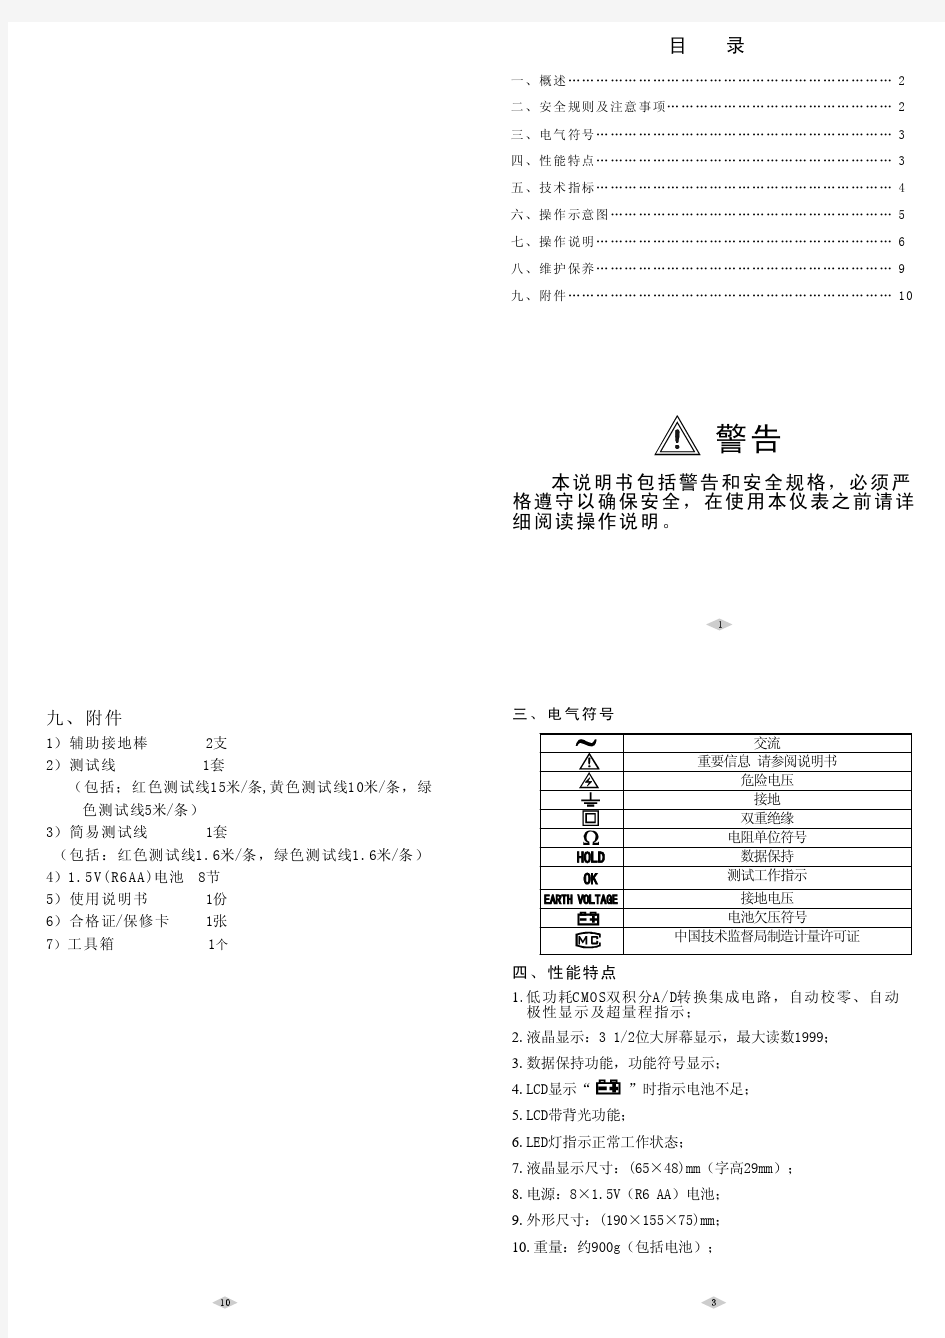 DY4200接地电阻测试仪中文说明书